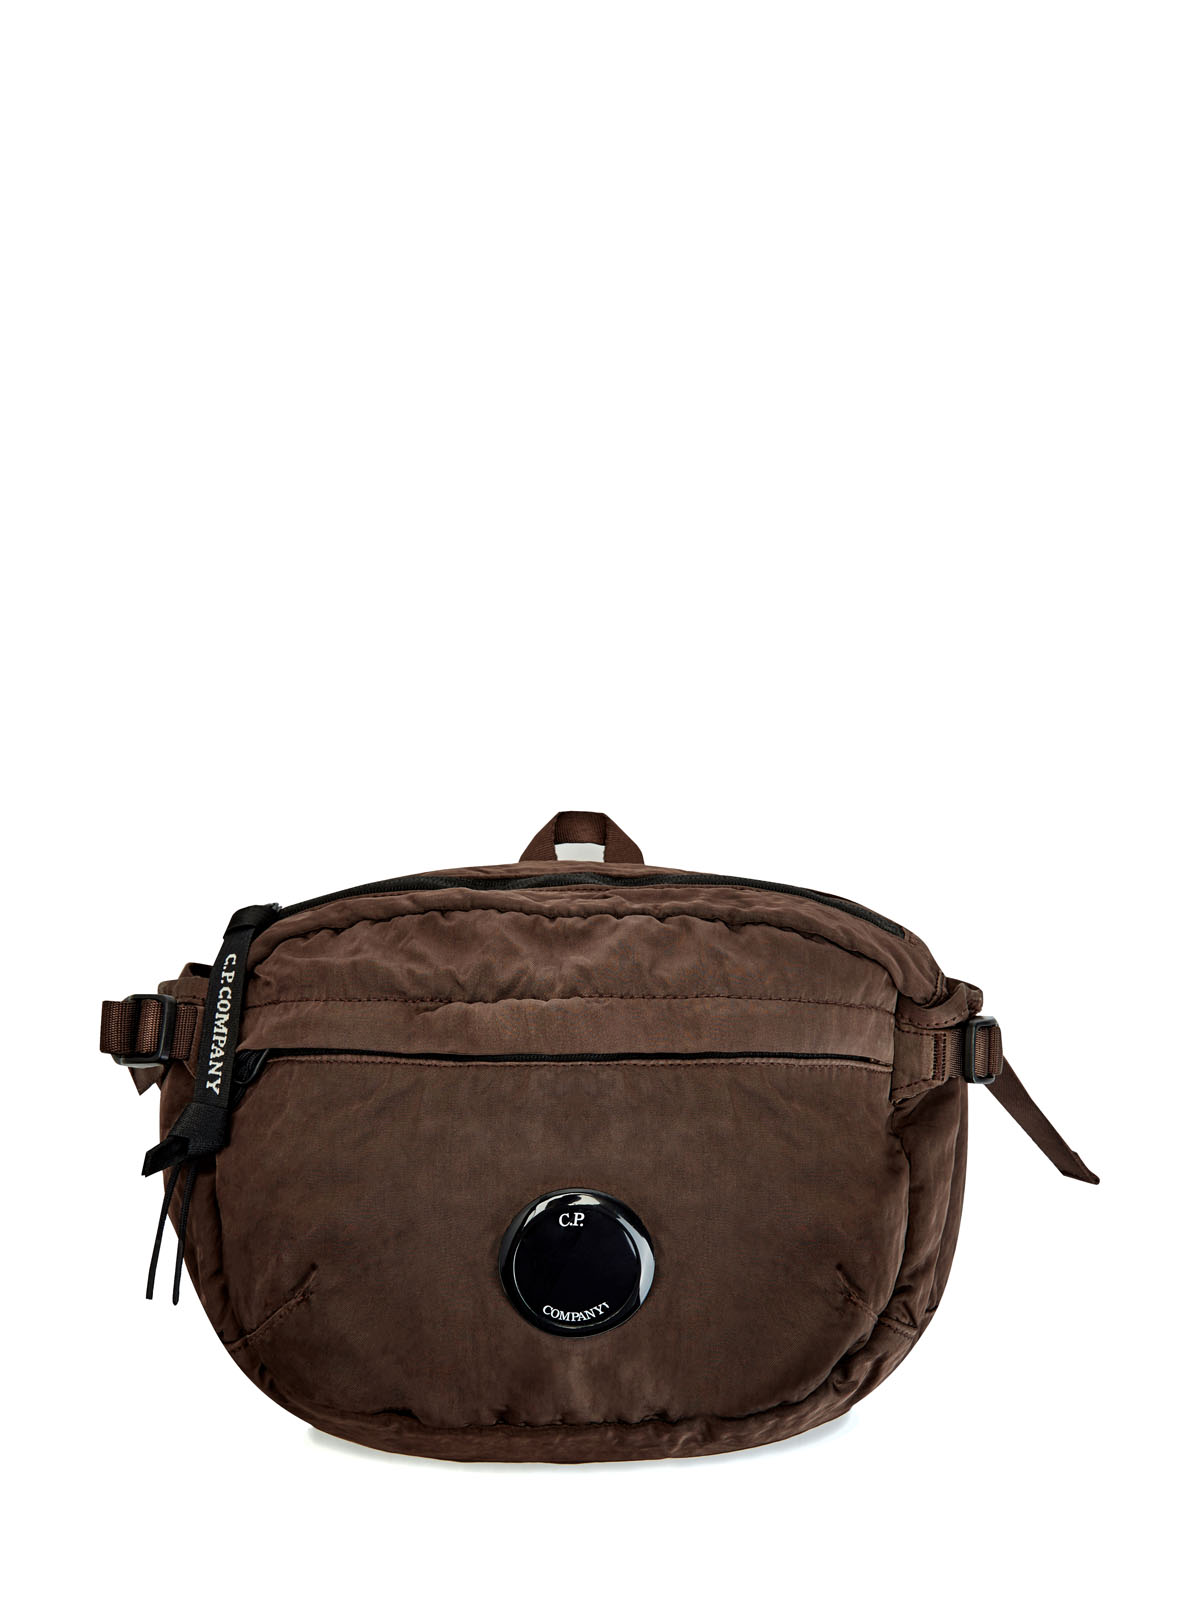 Окрашенная вручную сумка из материала Nylon B C.P.COMPANY, цвет коричневый, размер M;L;XL;2XL - фото 1